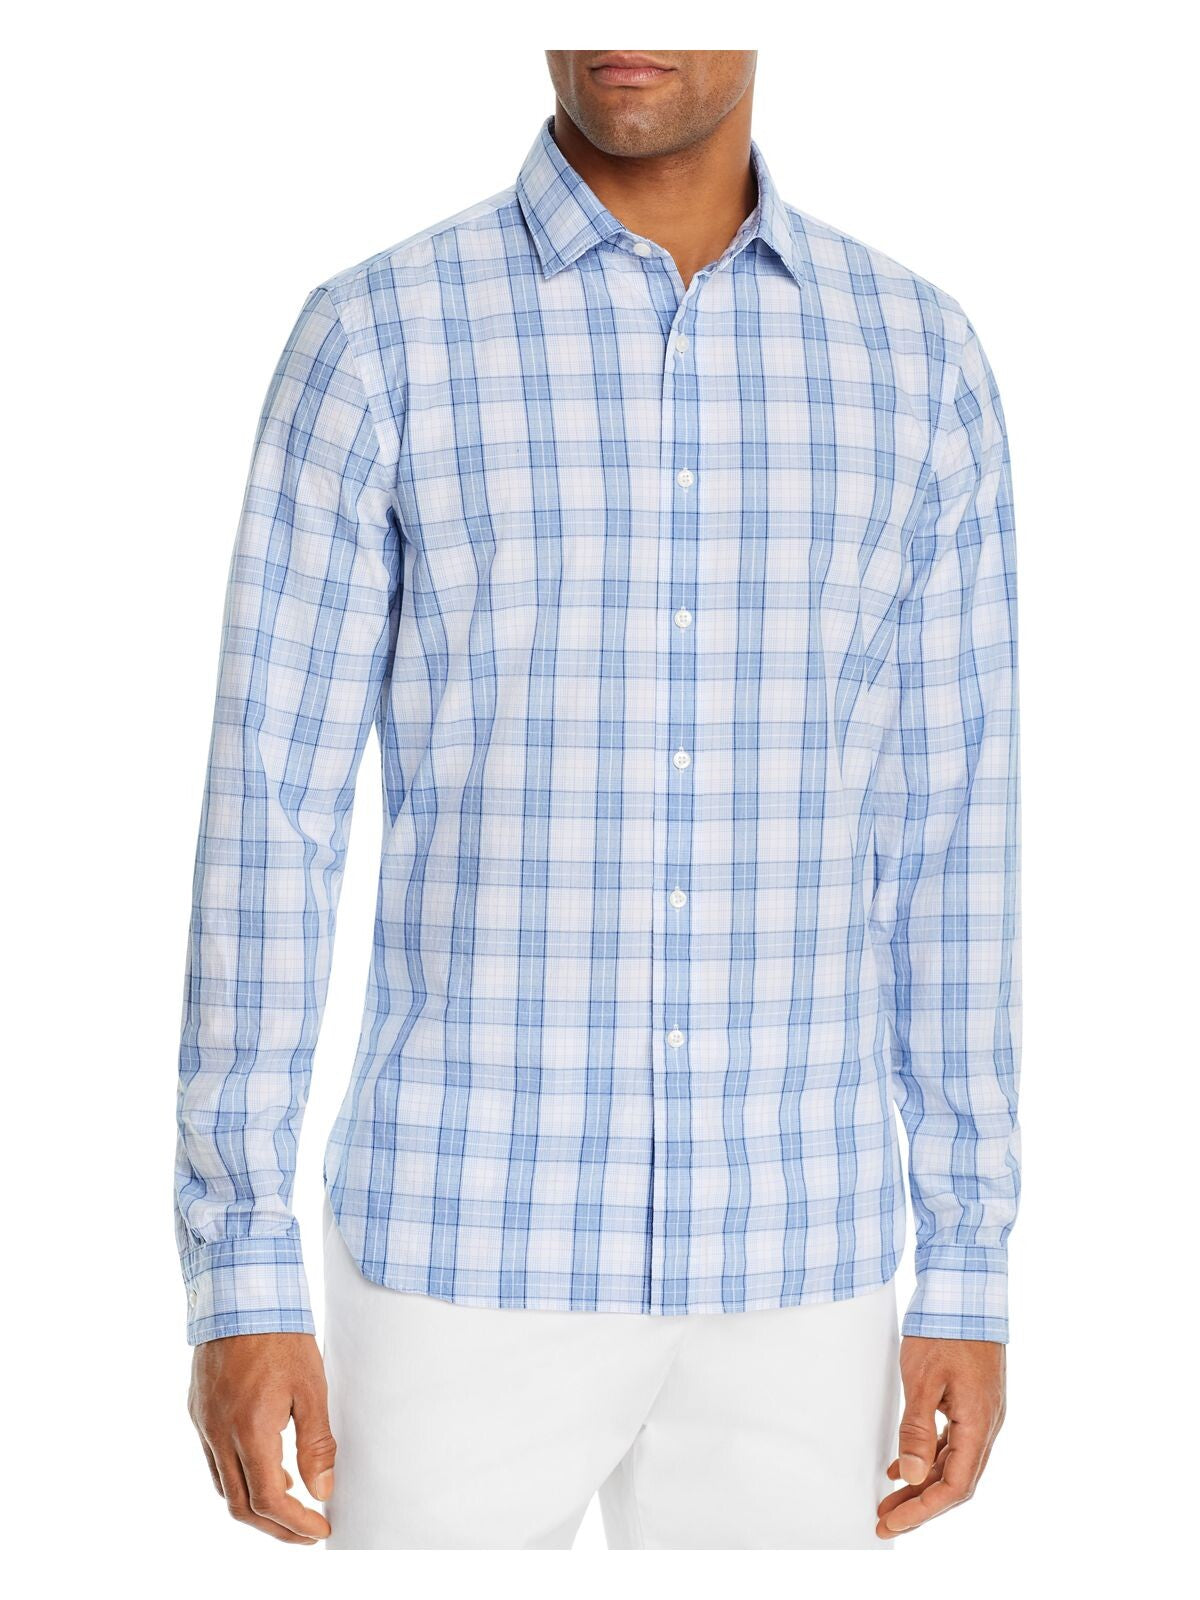 The Mens store Mens Blue Tartan Plaid Collared Button Down Shirt S